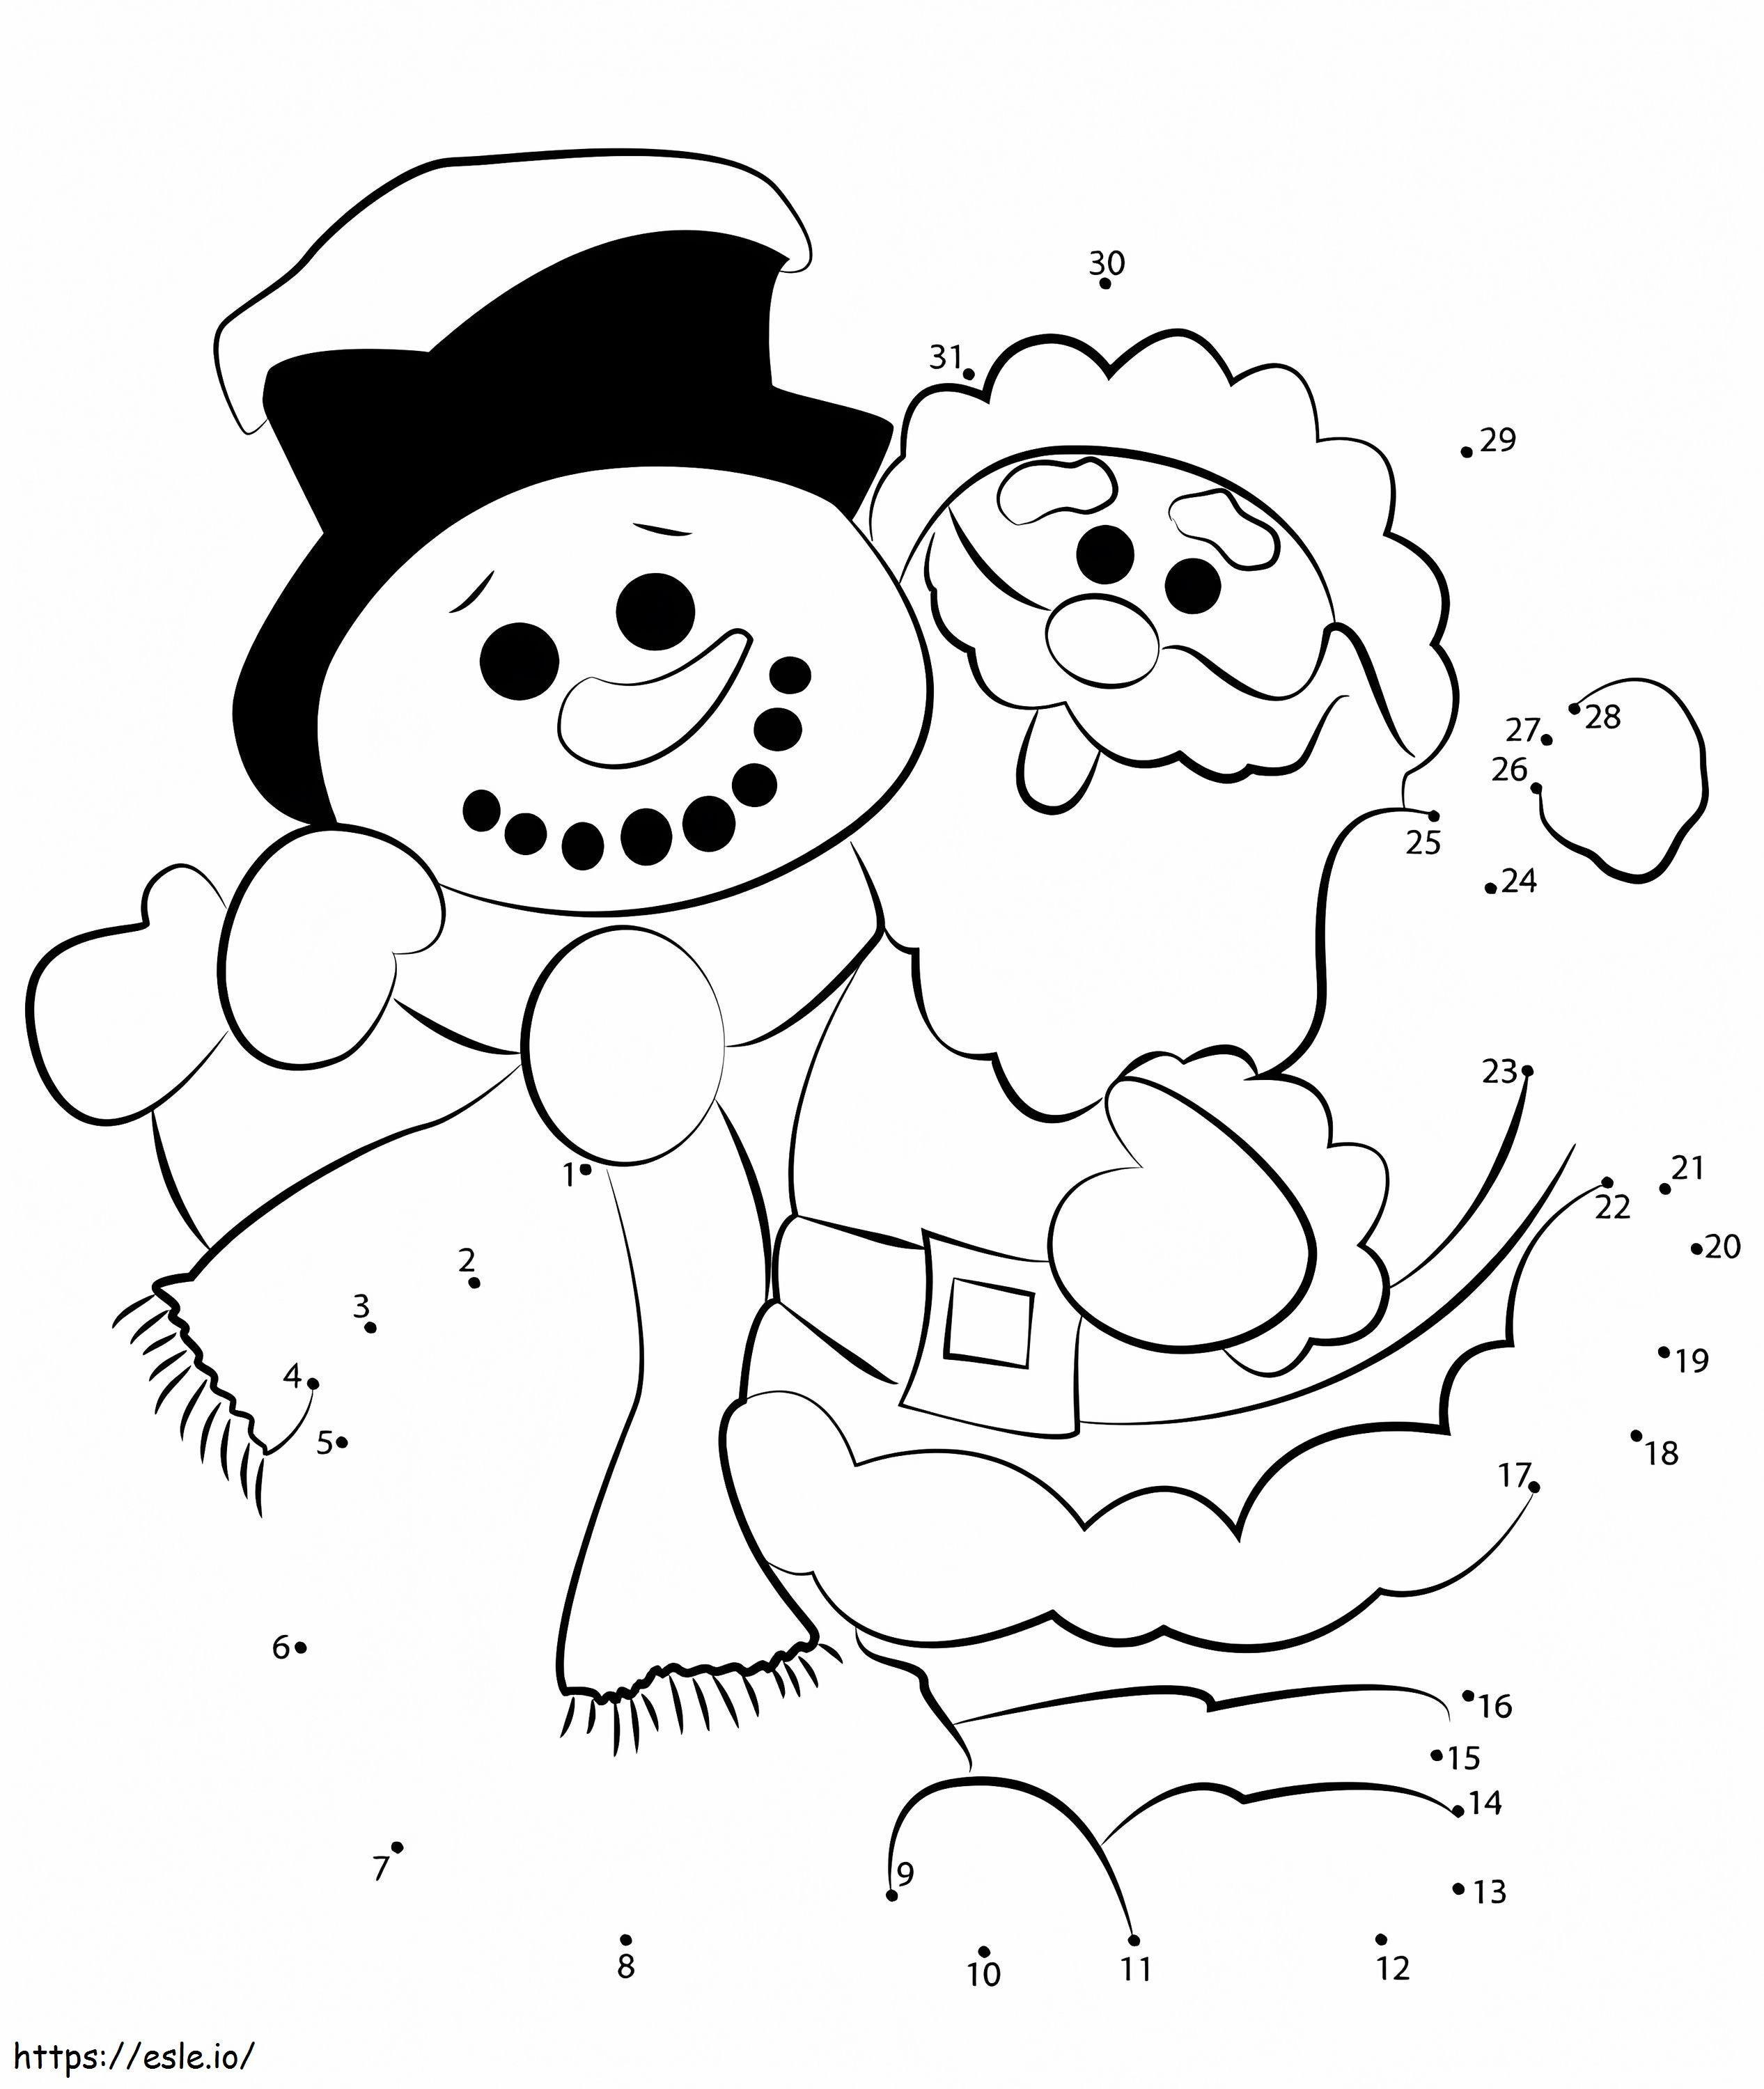 Coloriage Père Noël avec bonhomme de neige point à point à imprimer dessin